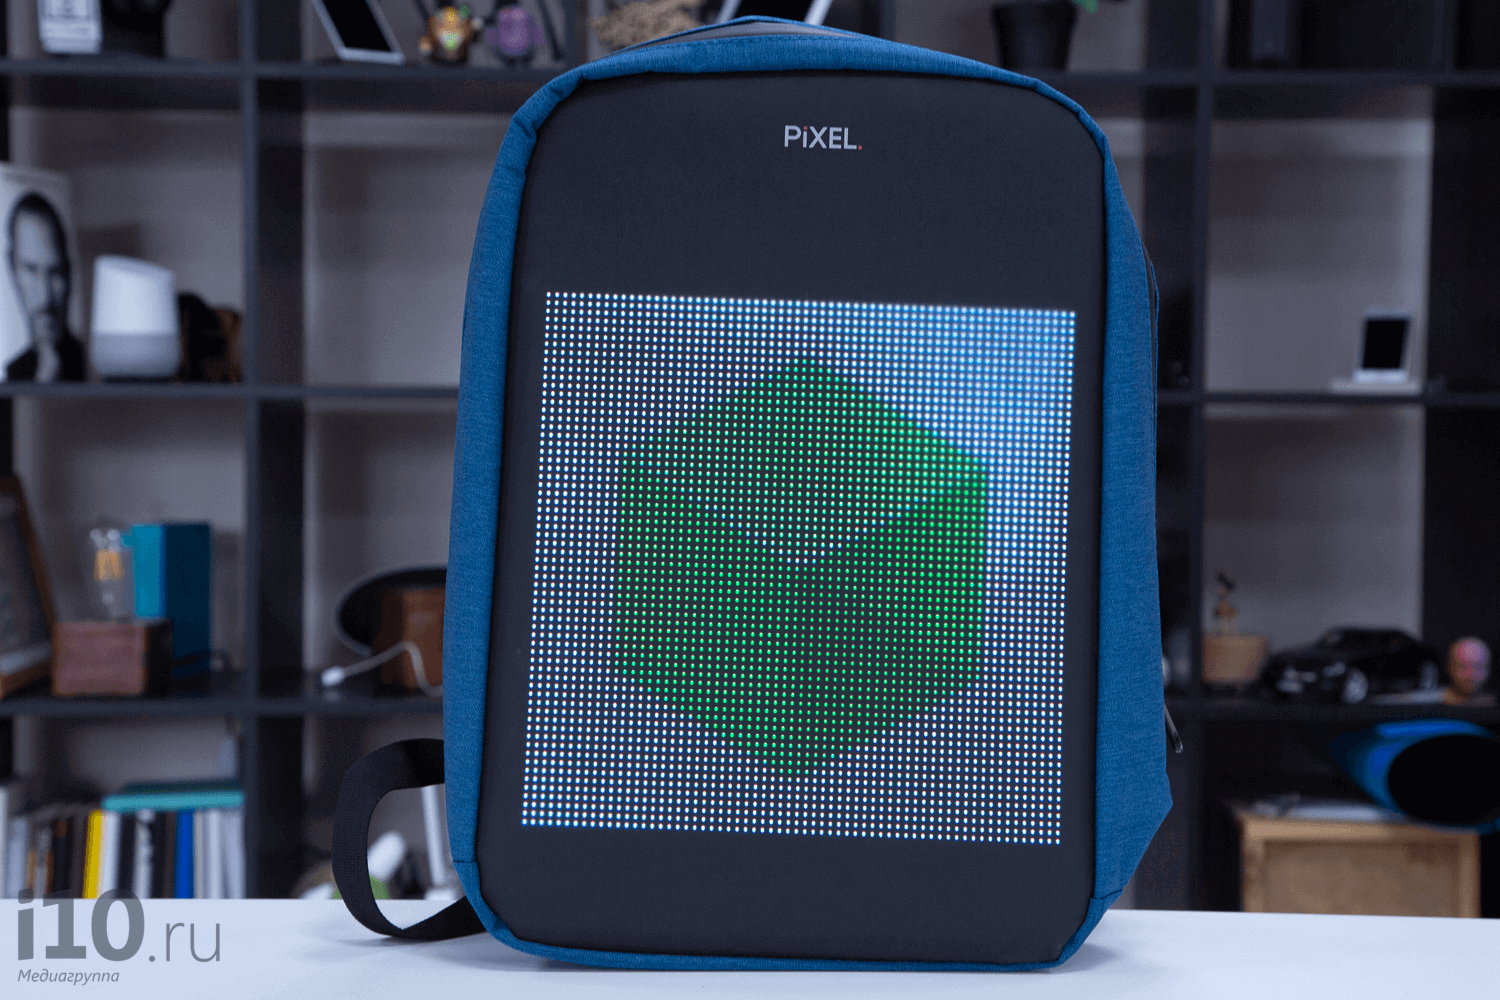 Шолу PIXEL — әлемде бірінші рюкзак экраны